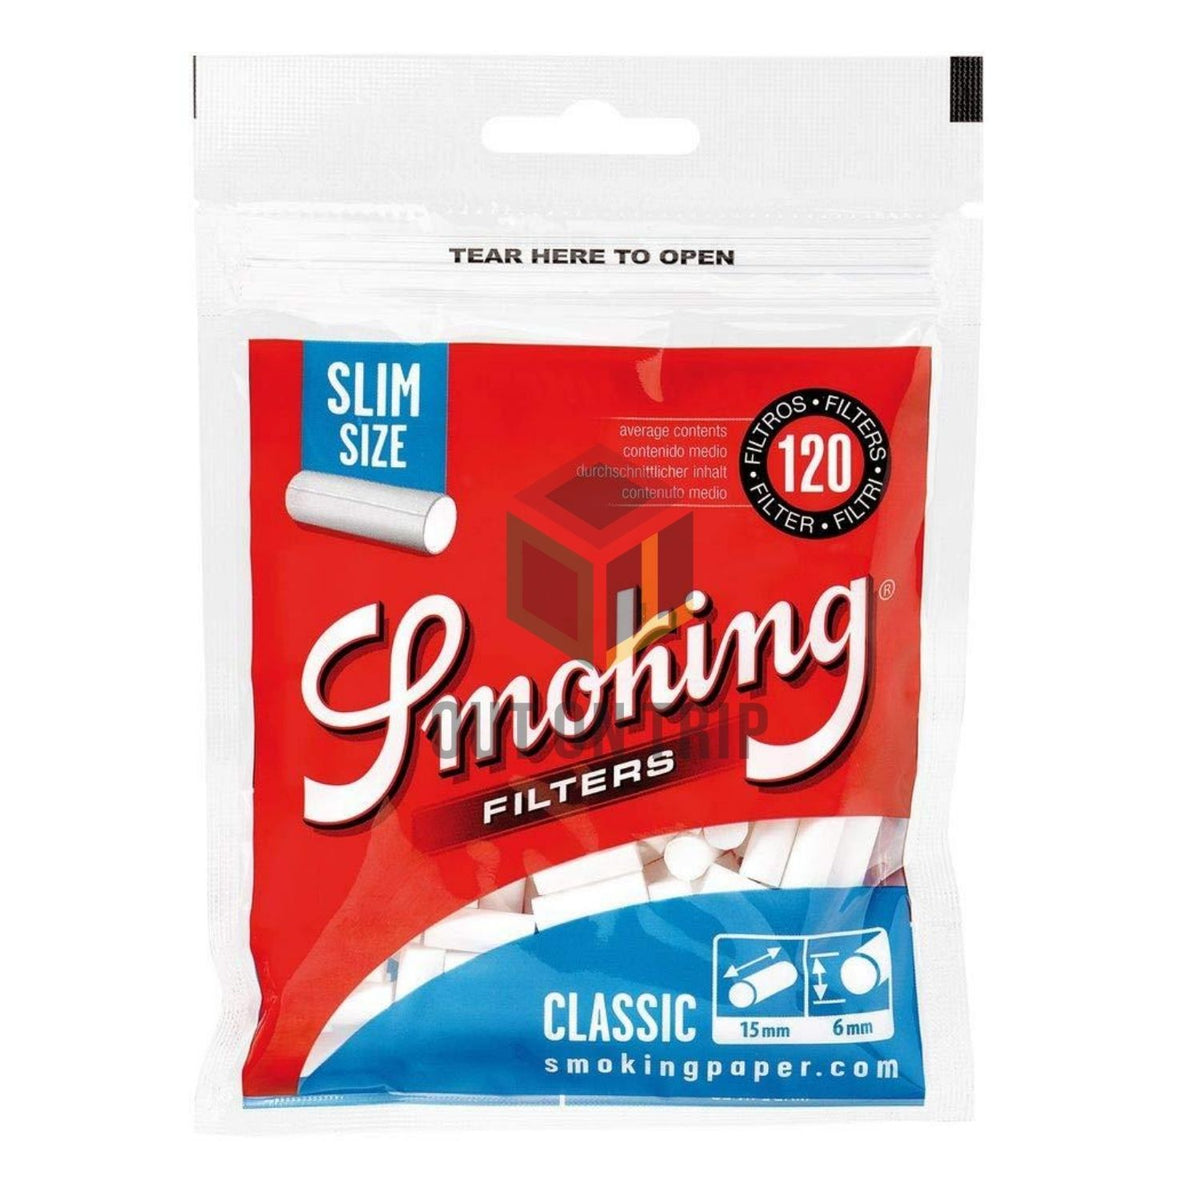 SMOKING Slim Size Cotton Filter - 120 Tips